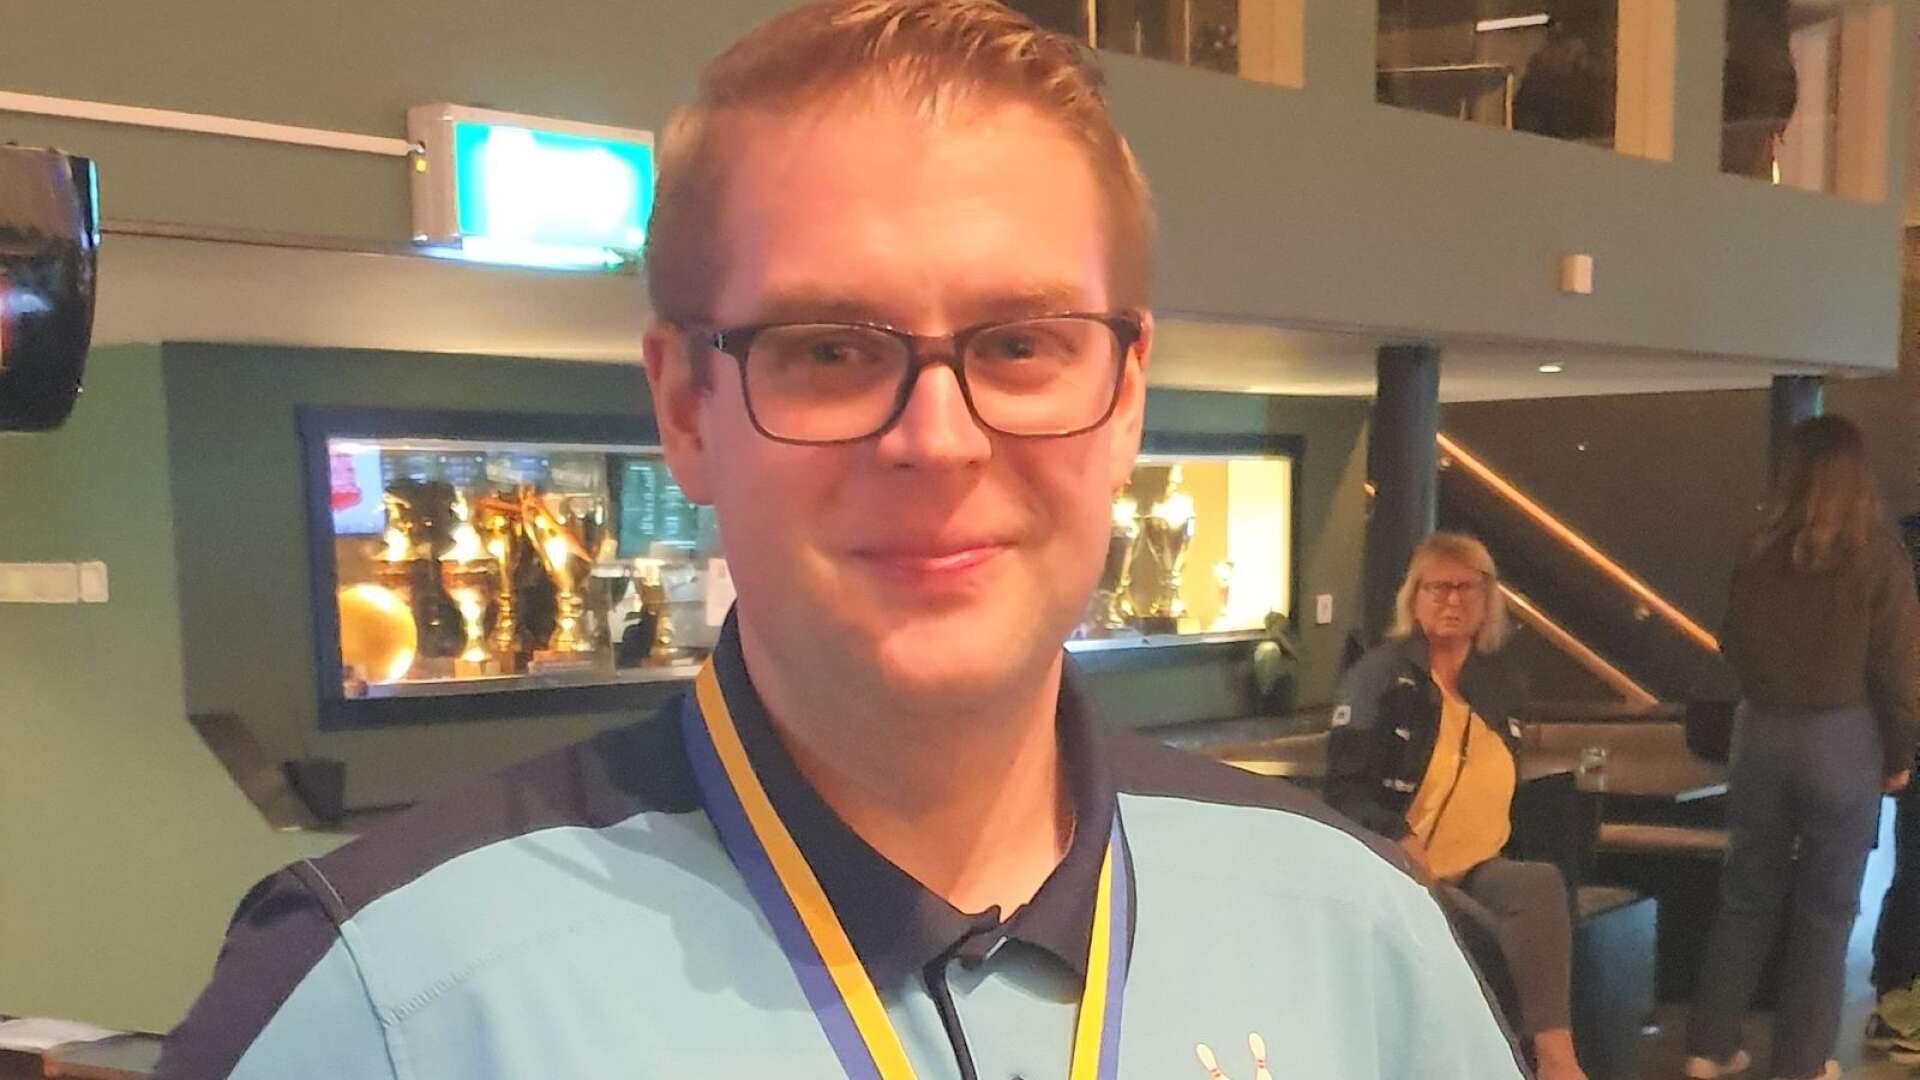 När SM i parabowling var tillbaka visade Team Mariestads Robin Ljungkvist klassen. Han tog hem sitt femte guld i A-klassen och satte nytt svenskt rekord.